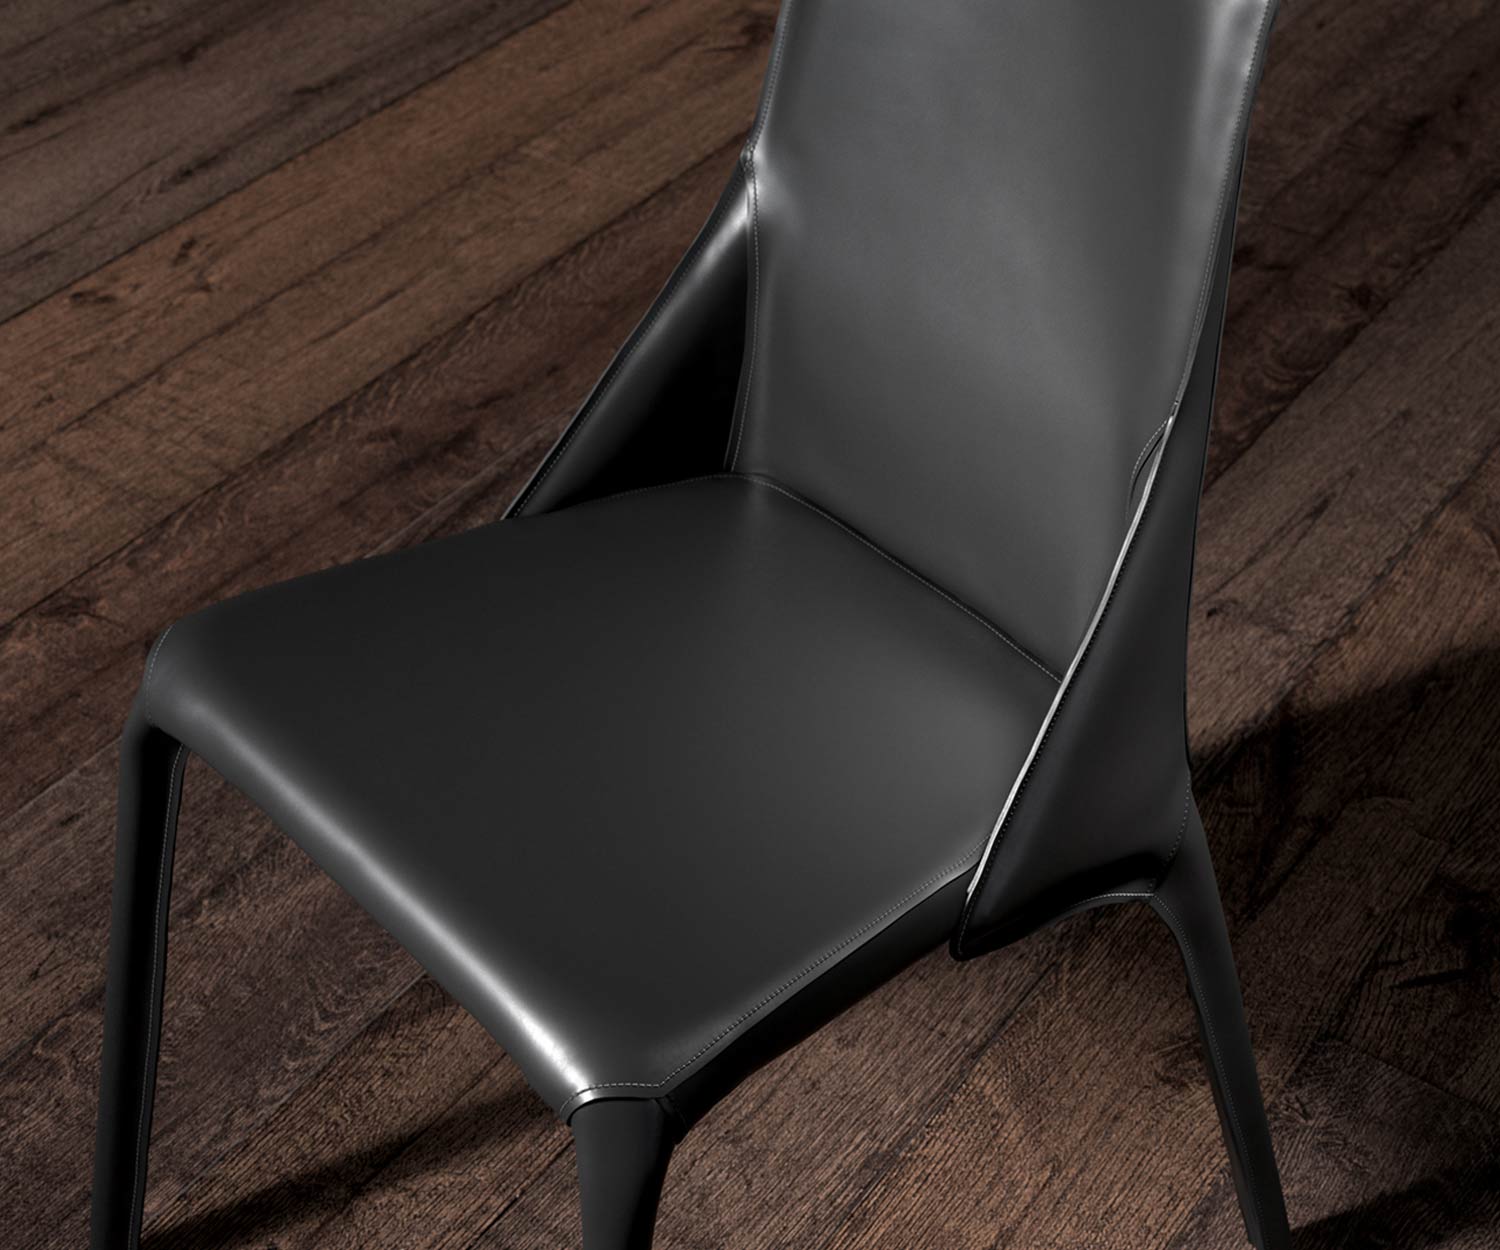 Squisita sedia di design in pelle nera con vista sul cuoio